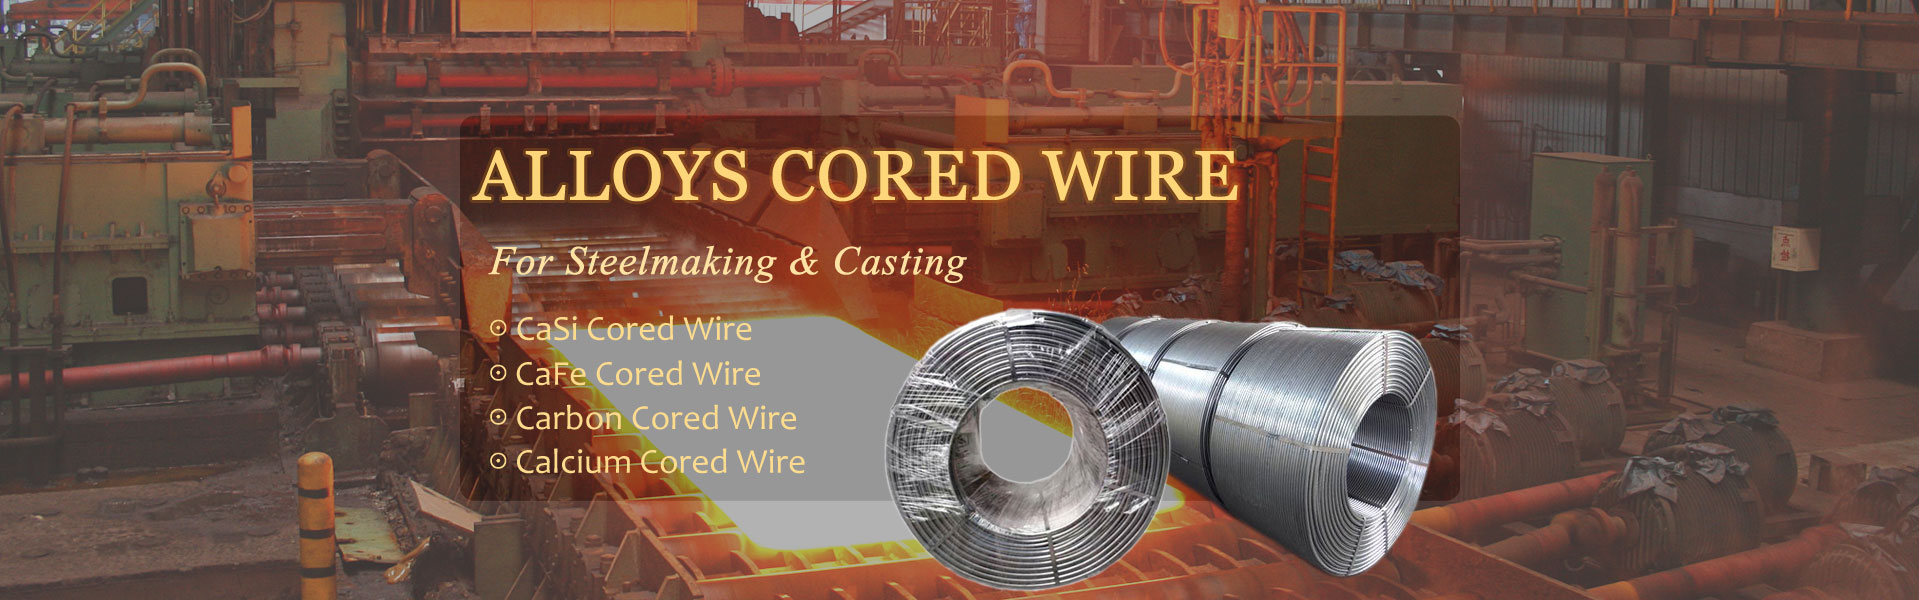 Alloys Cored Wire